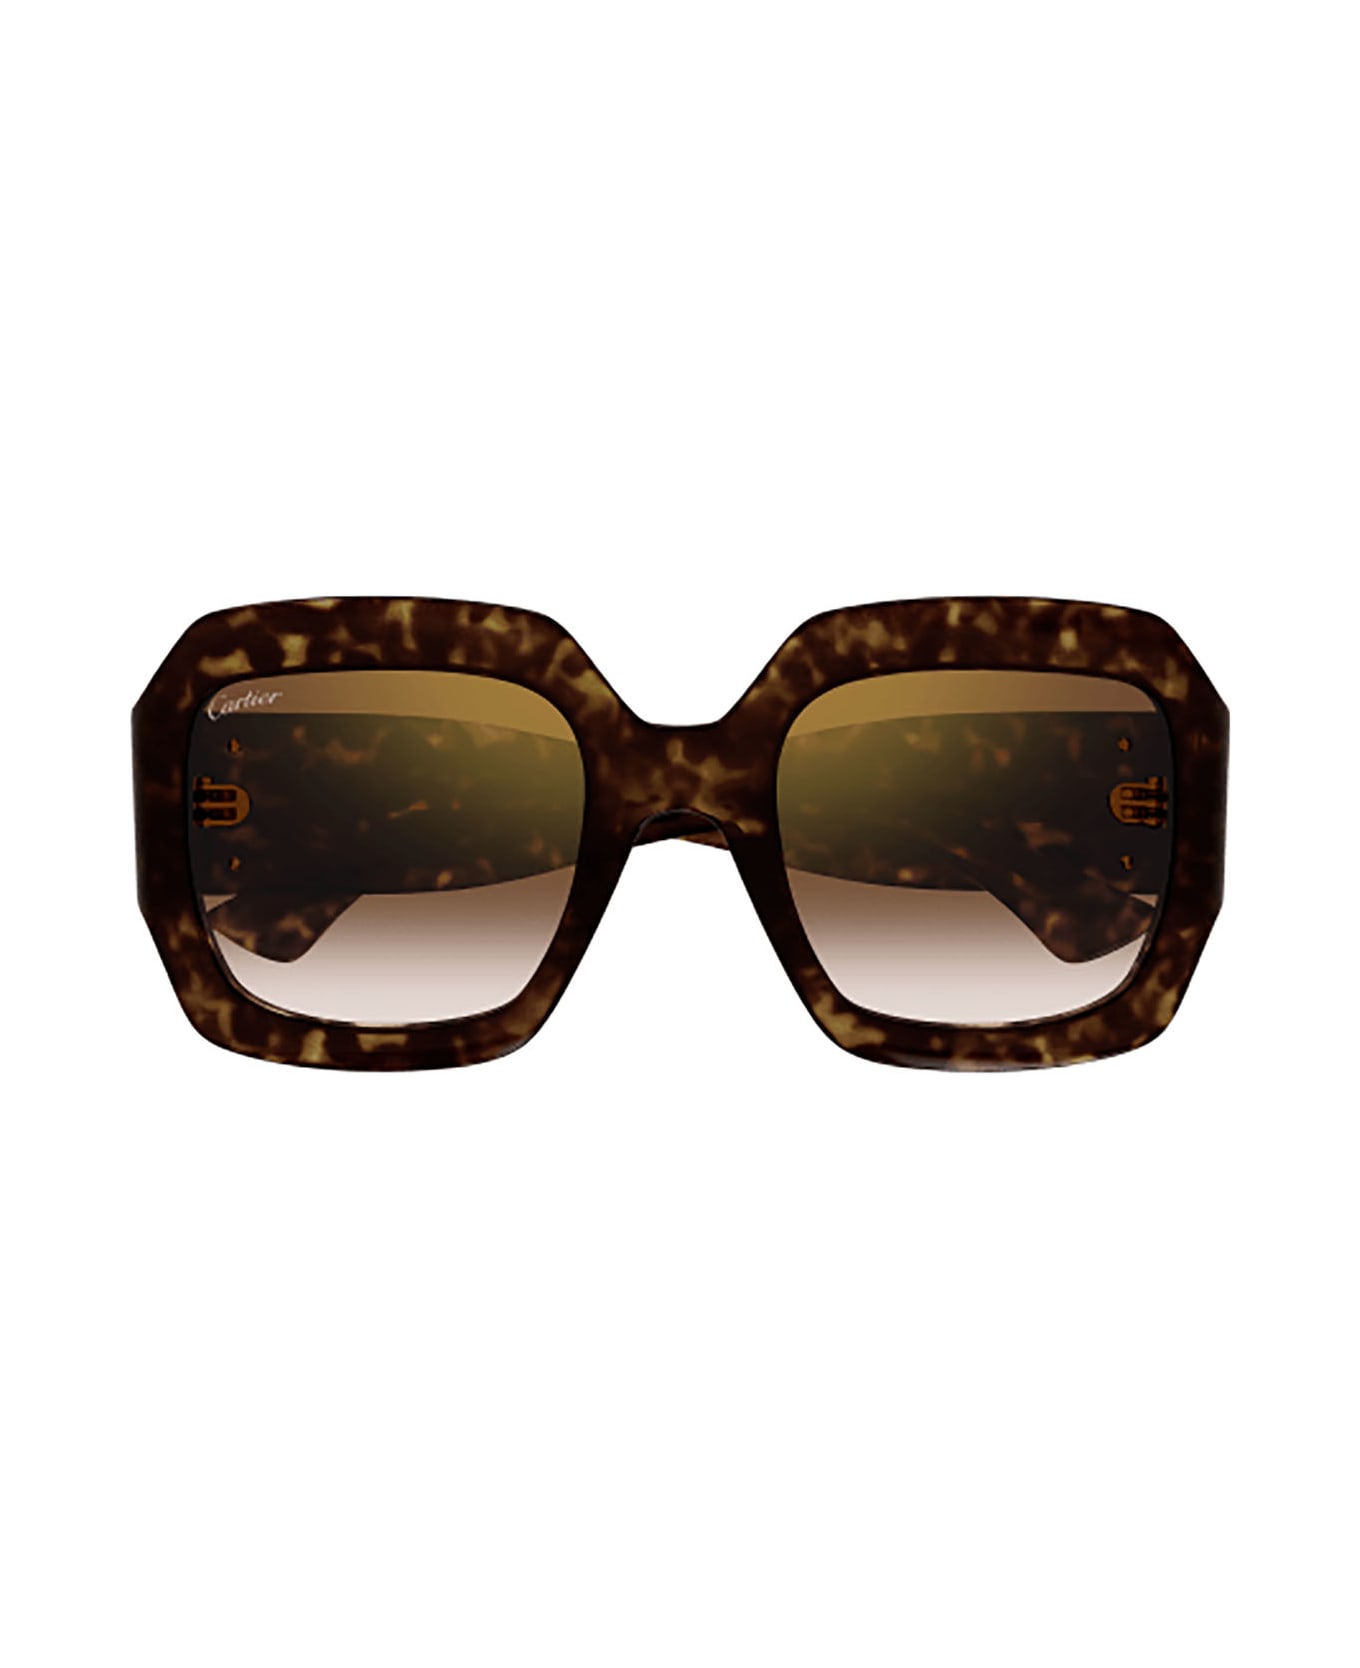 Cartier Eyewear Ct0434s Sunglasses - Havana Havana Brown